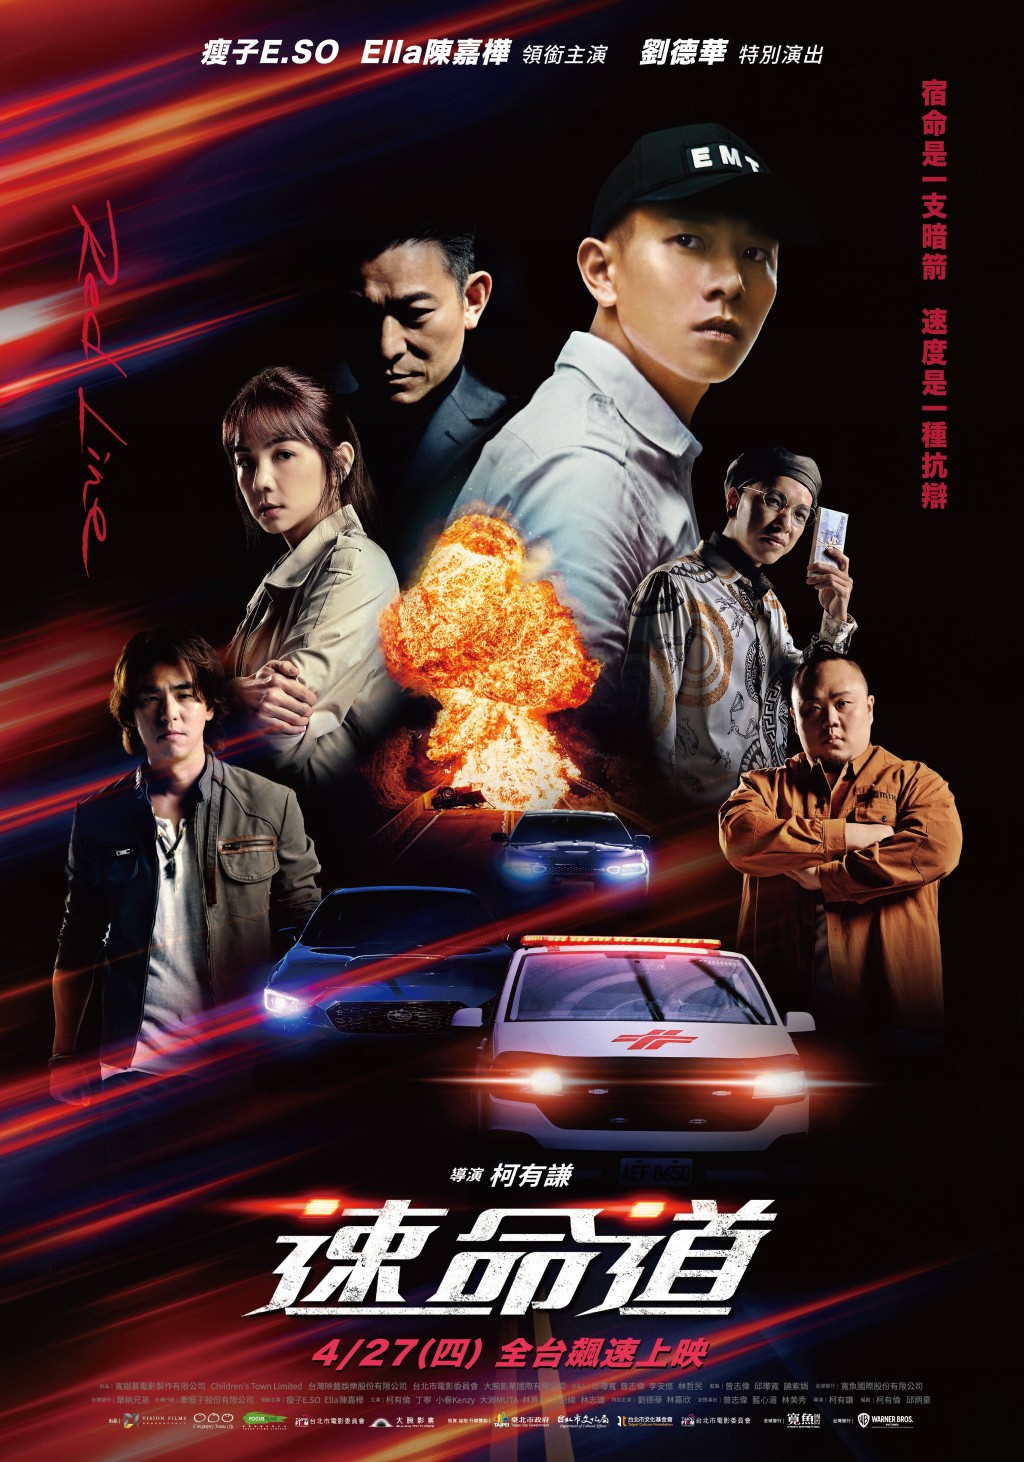 柯有謙早前以新導演身份拍攝台灣電影《速命道》。